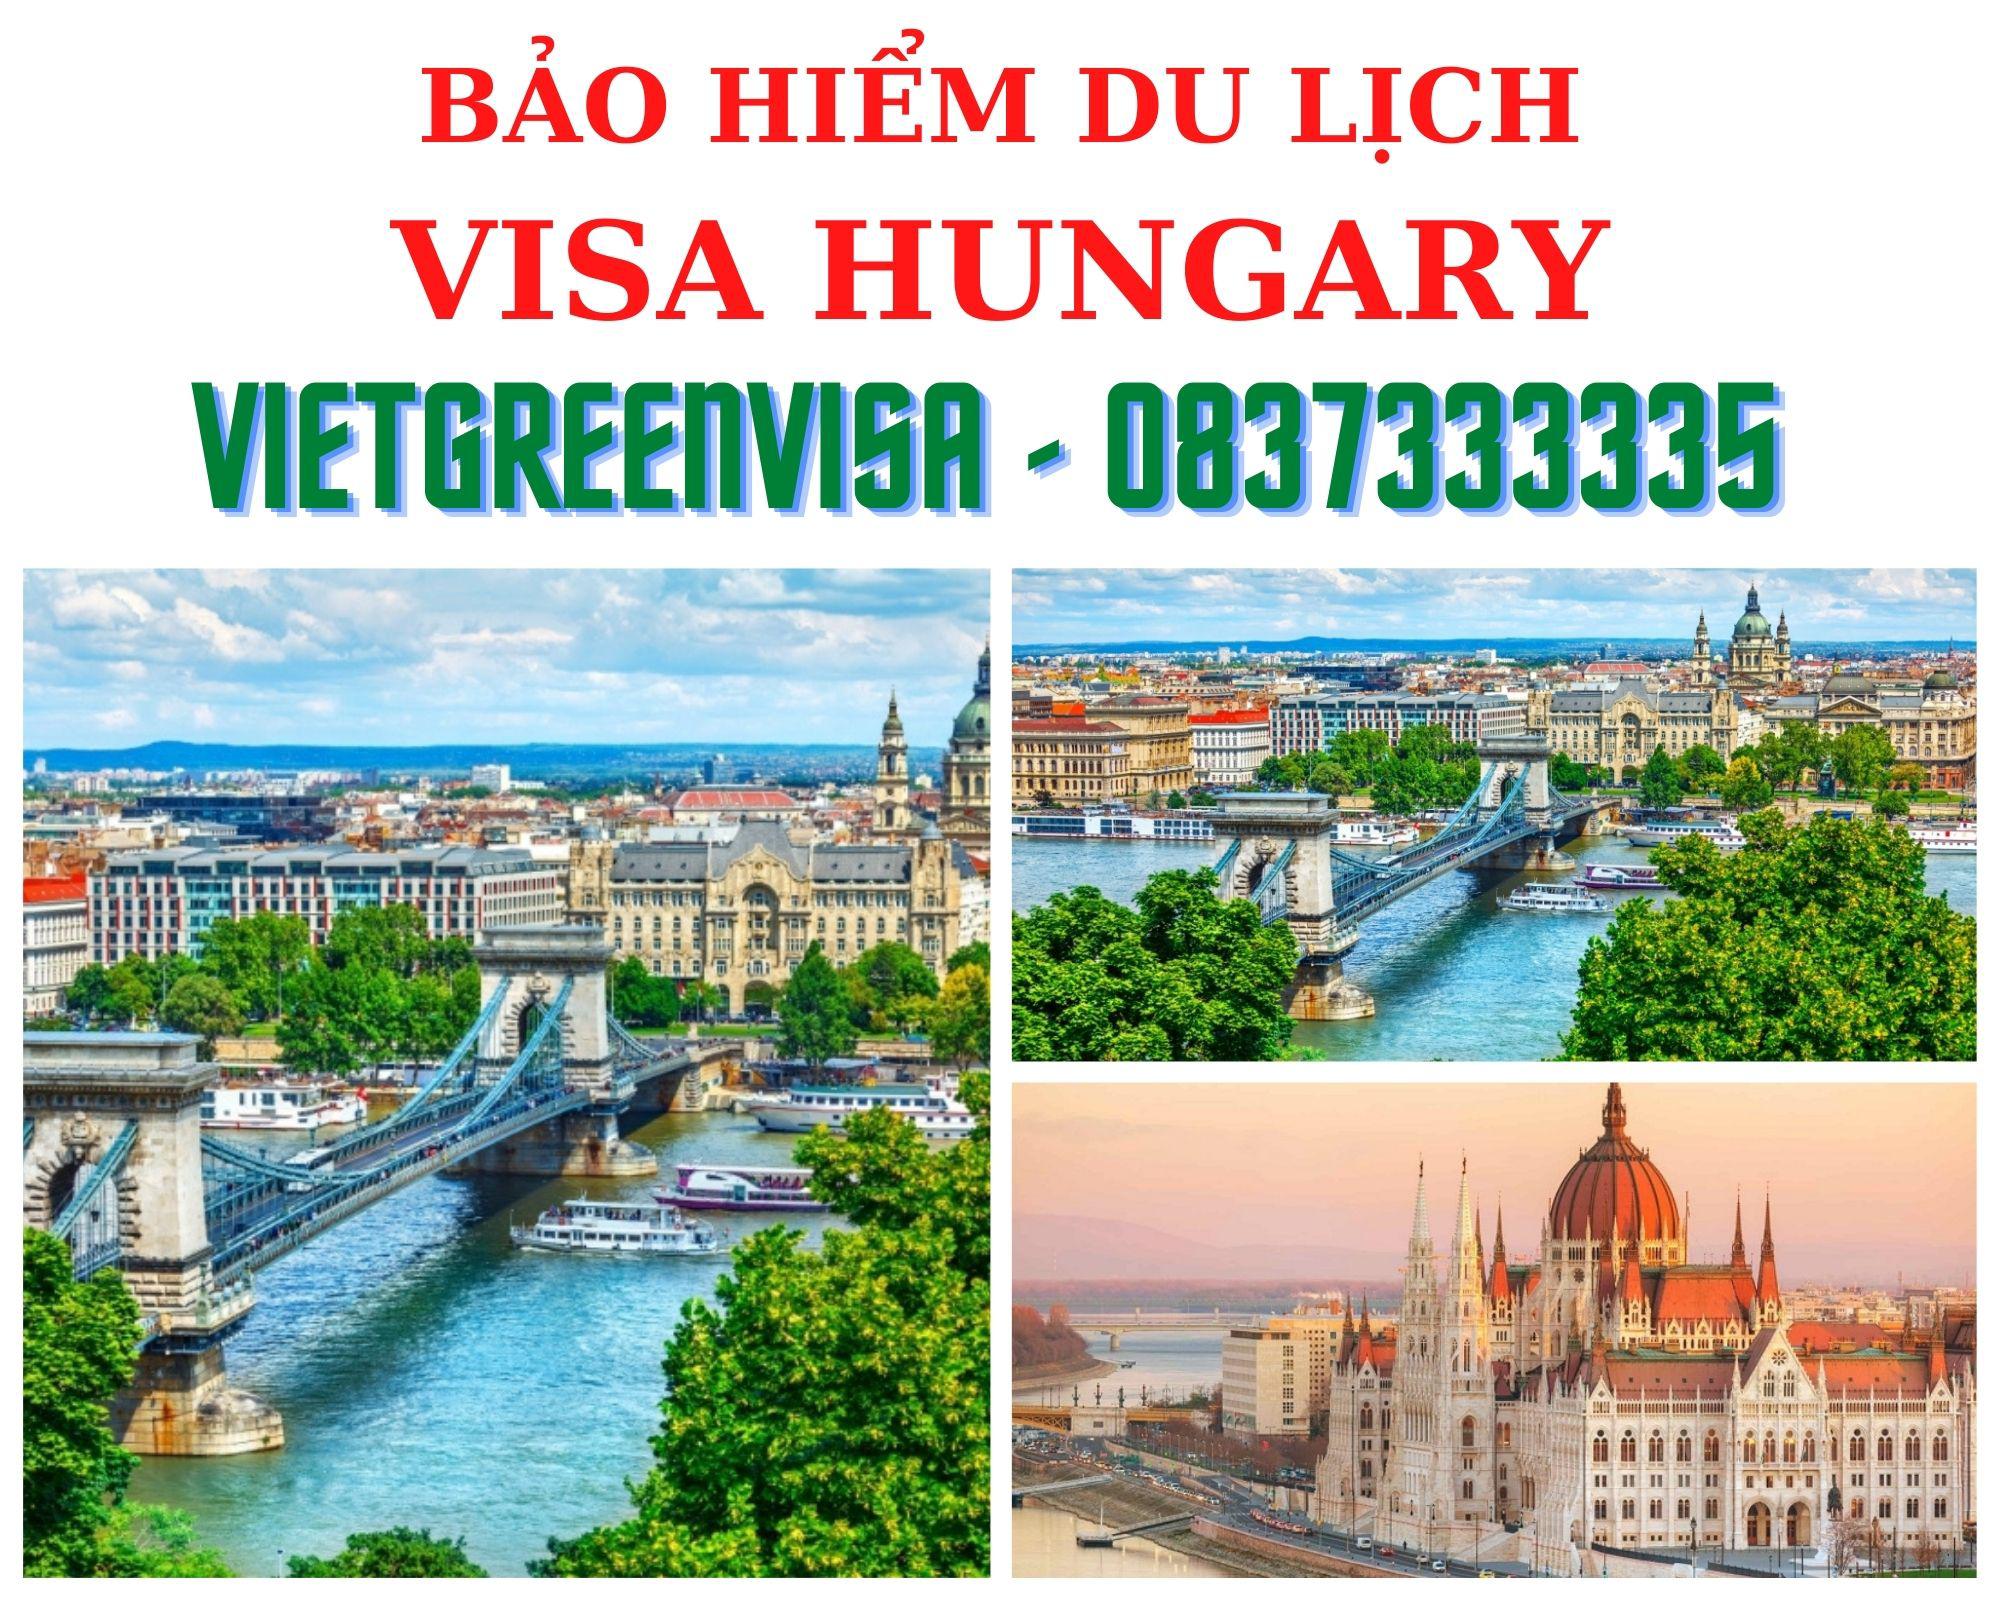 Dịch vụ bảo hiểm du lịch xin visa Hungary giá tốt nhất